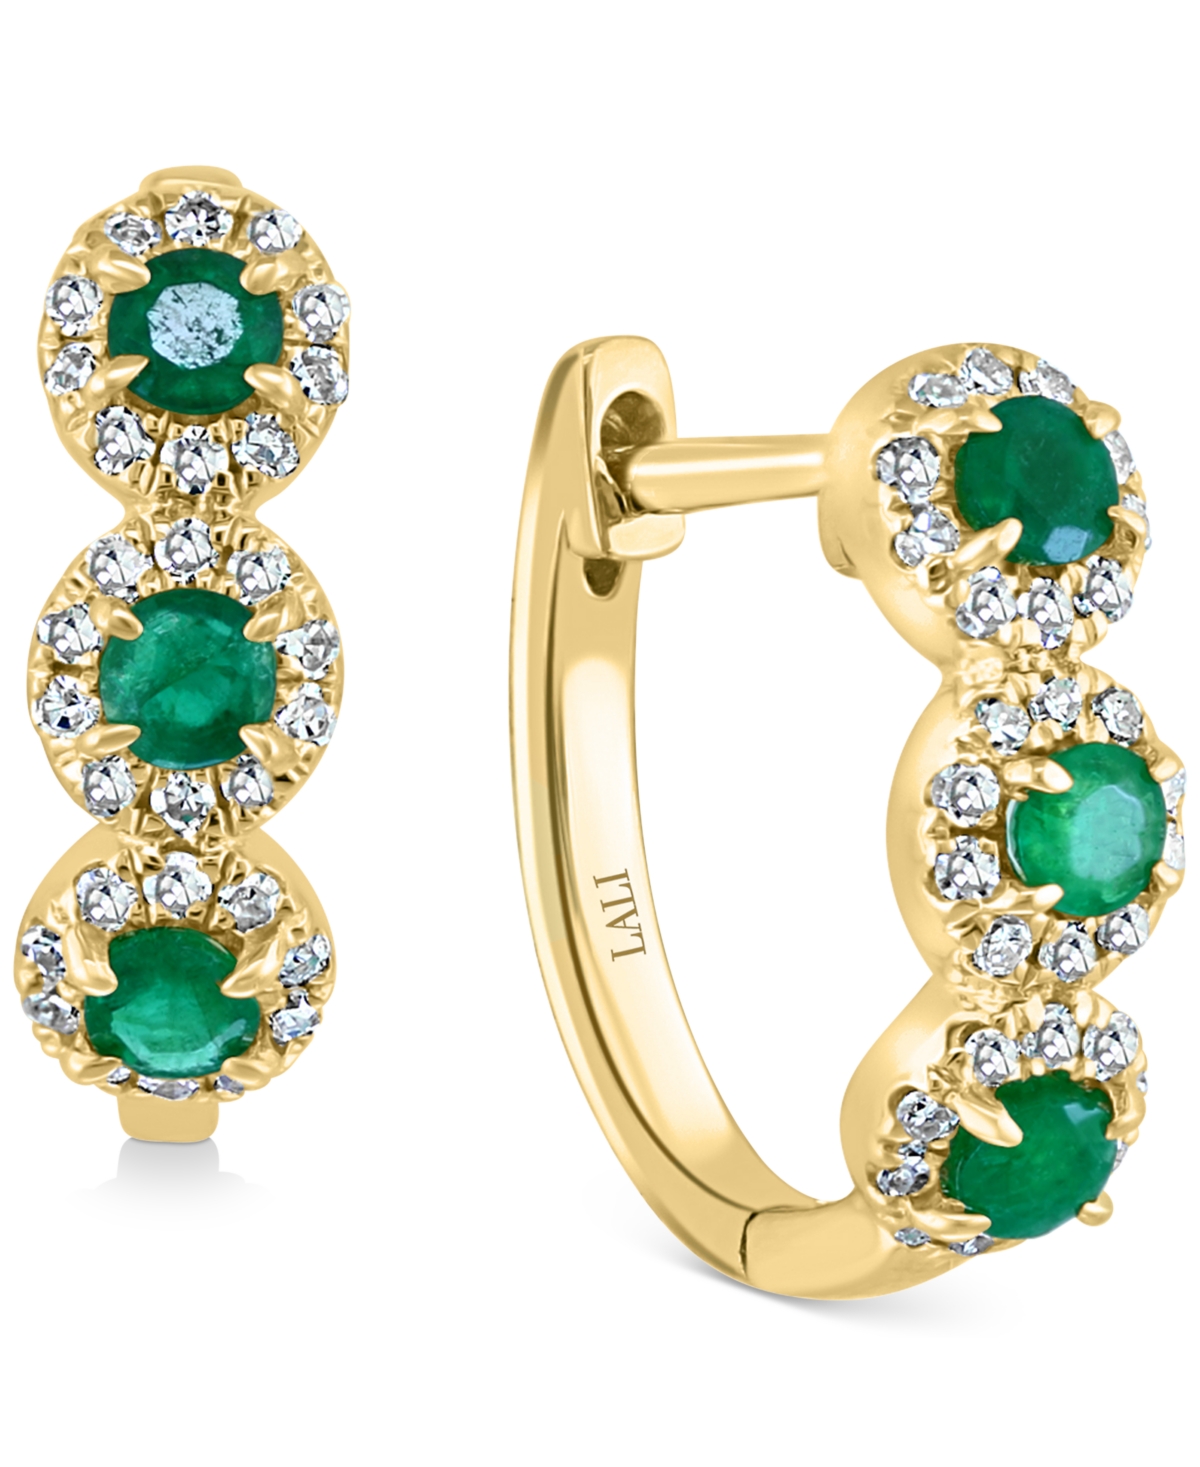 Lali Jewels Emerald (1/3 ct. t.w.) & Diamond (1/5 ct. t.w.) Triple Halo Hoop Earrings in 14k Gold (Also in Rose Gold)